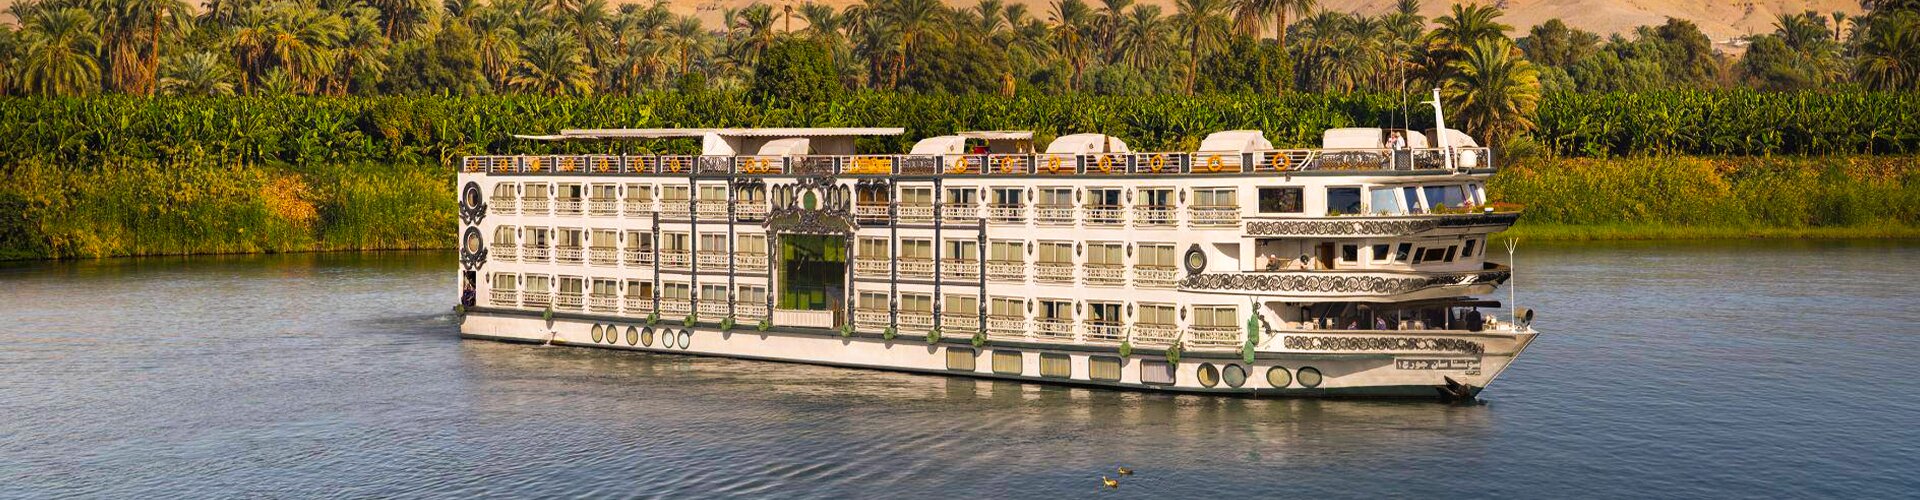 egypt nile cruises